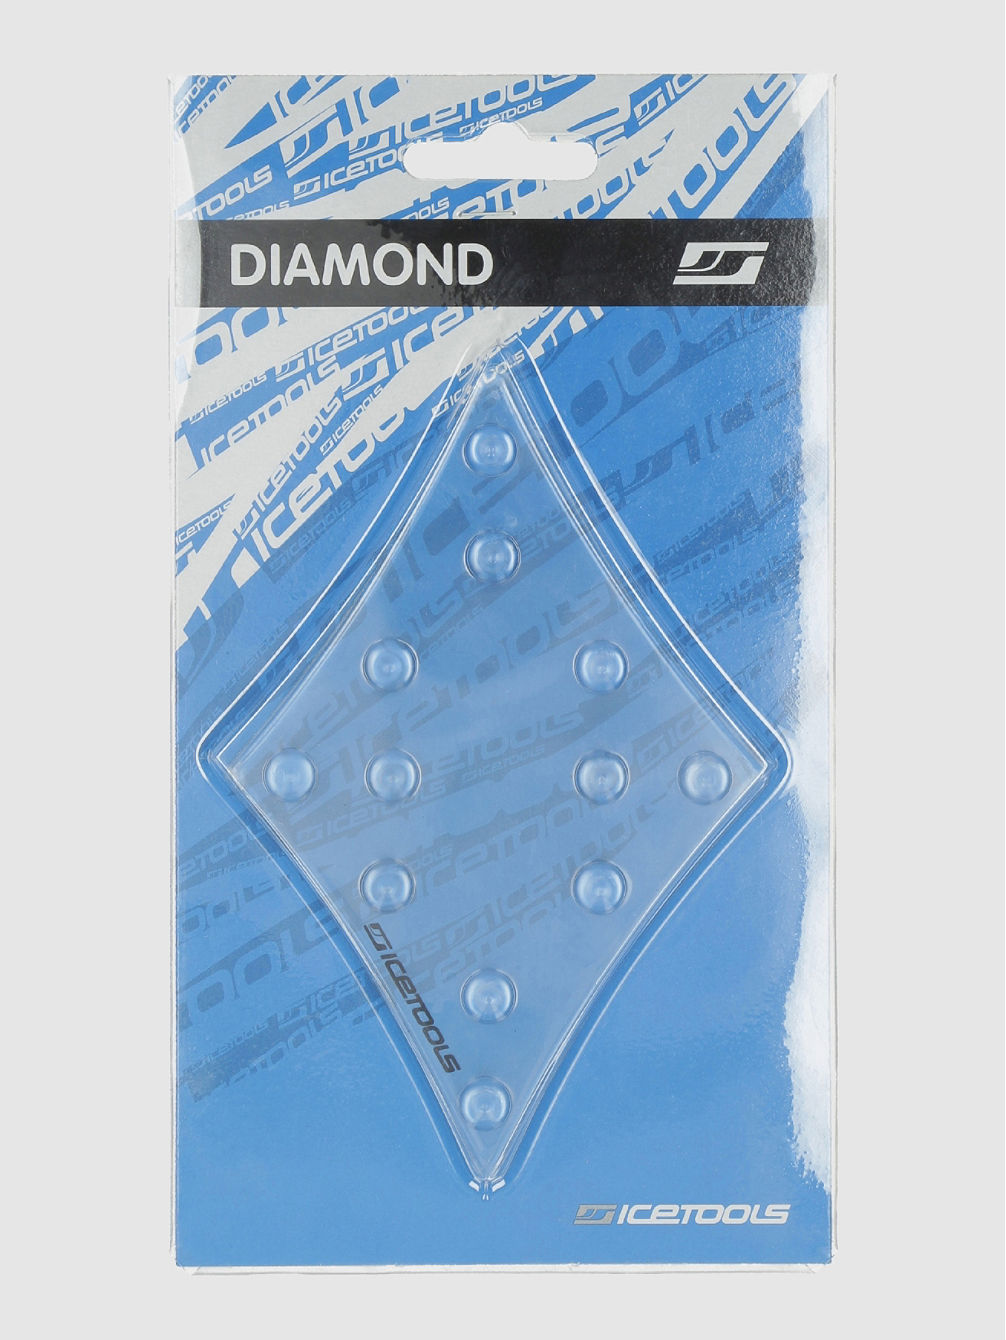 Diamond Grip pad